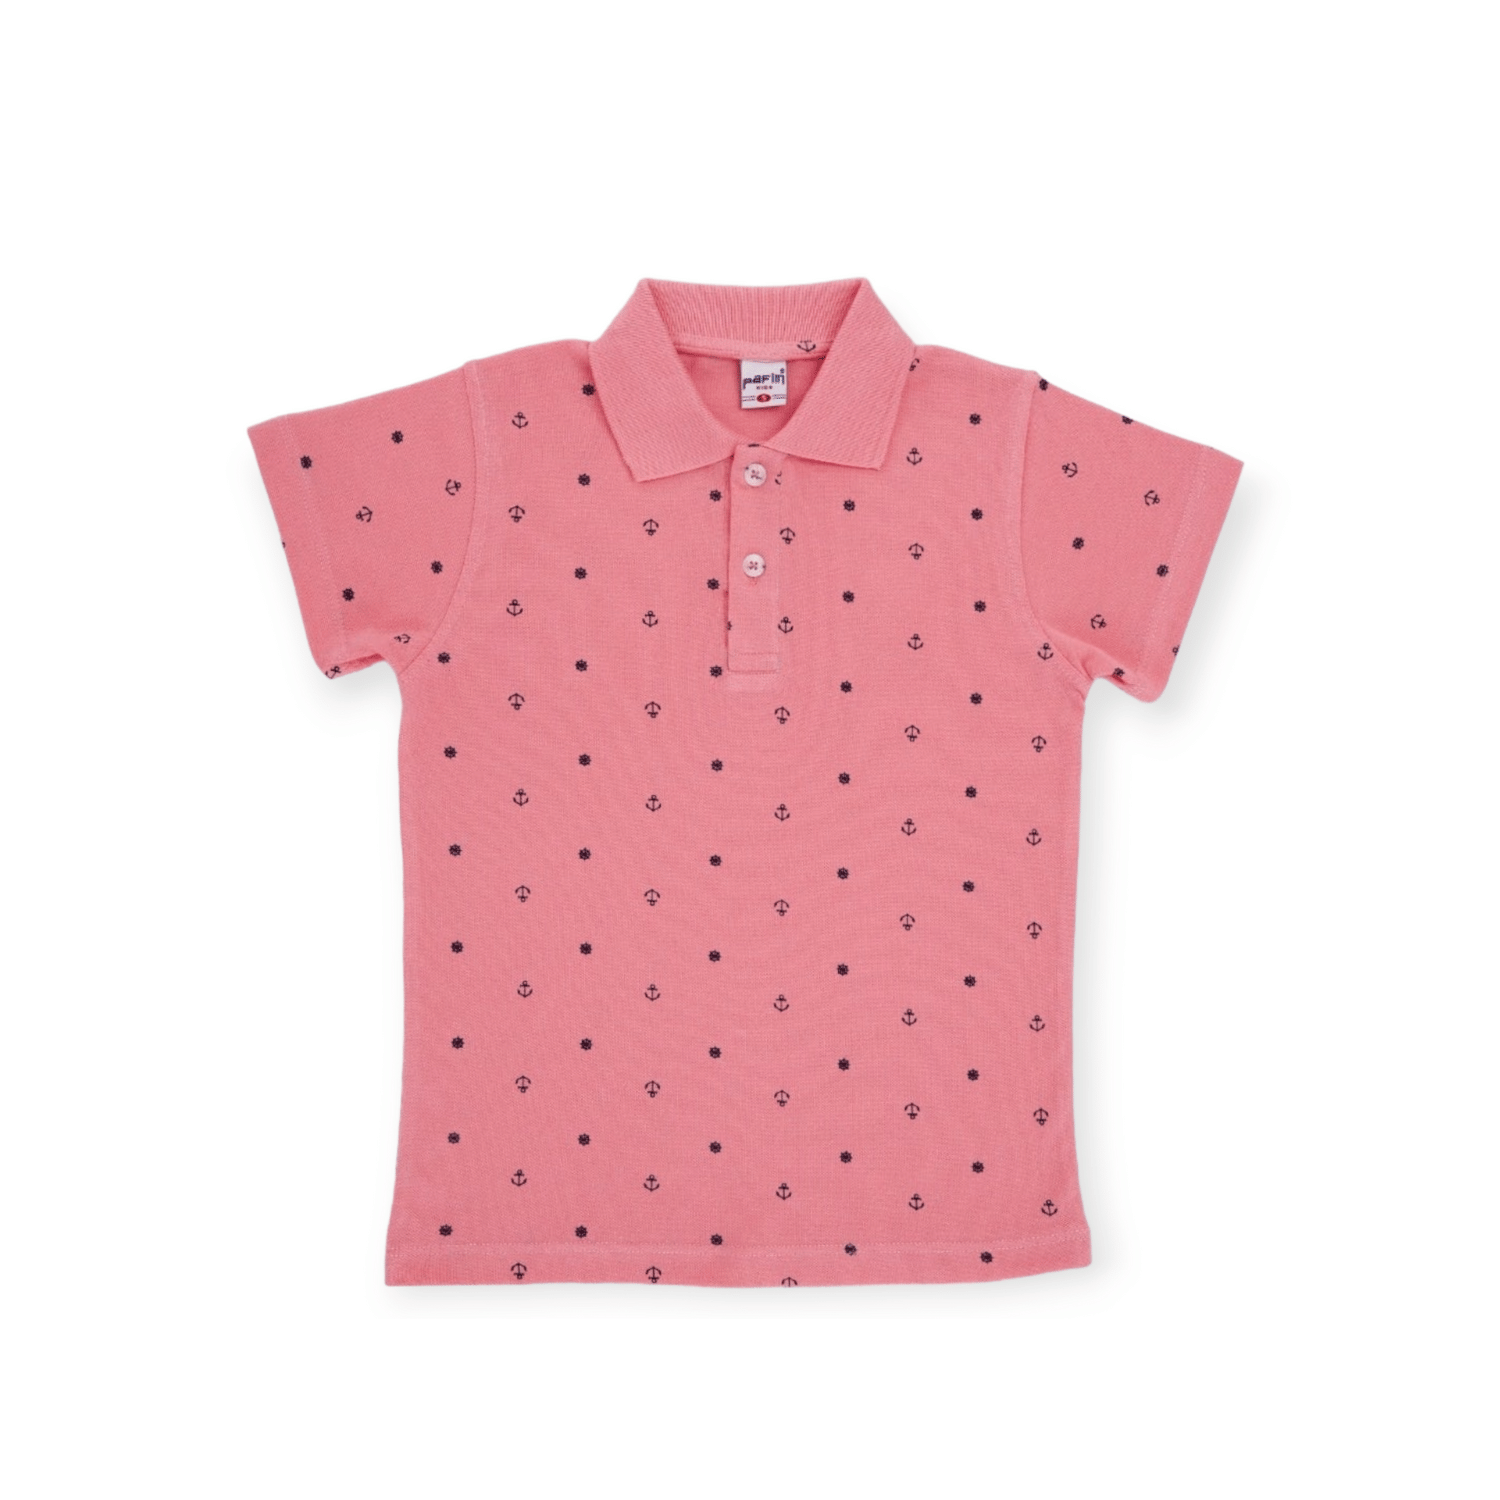 The Anchor Boys Polo Shirt